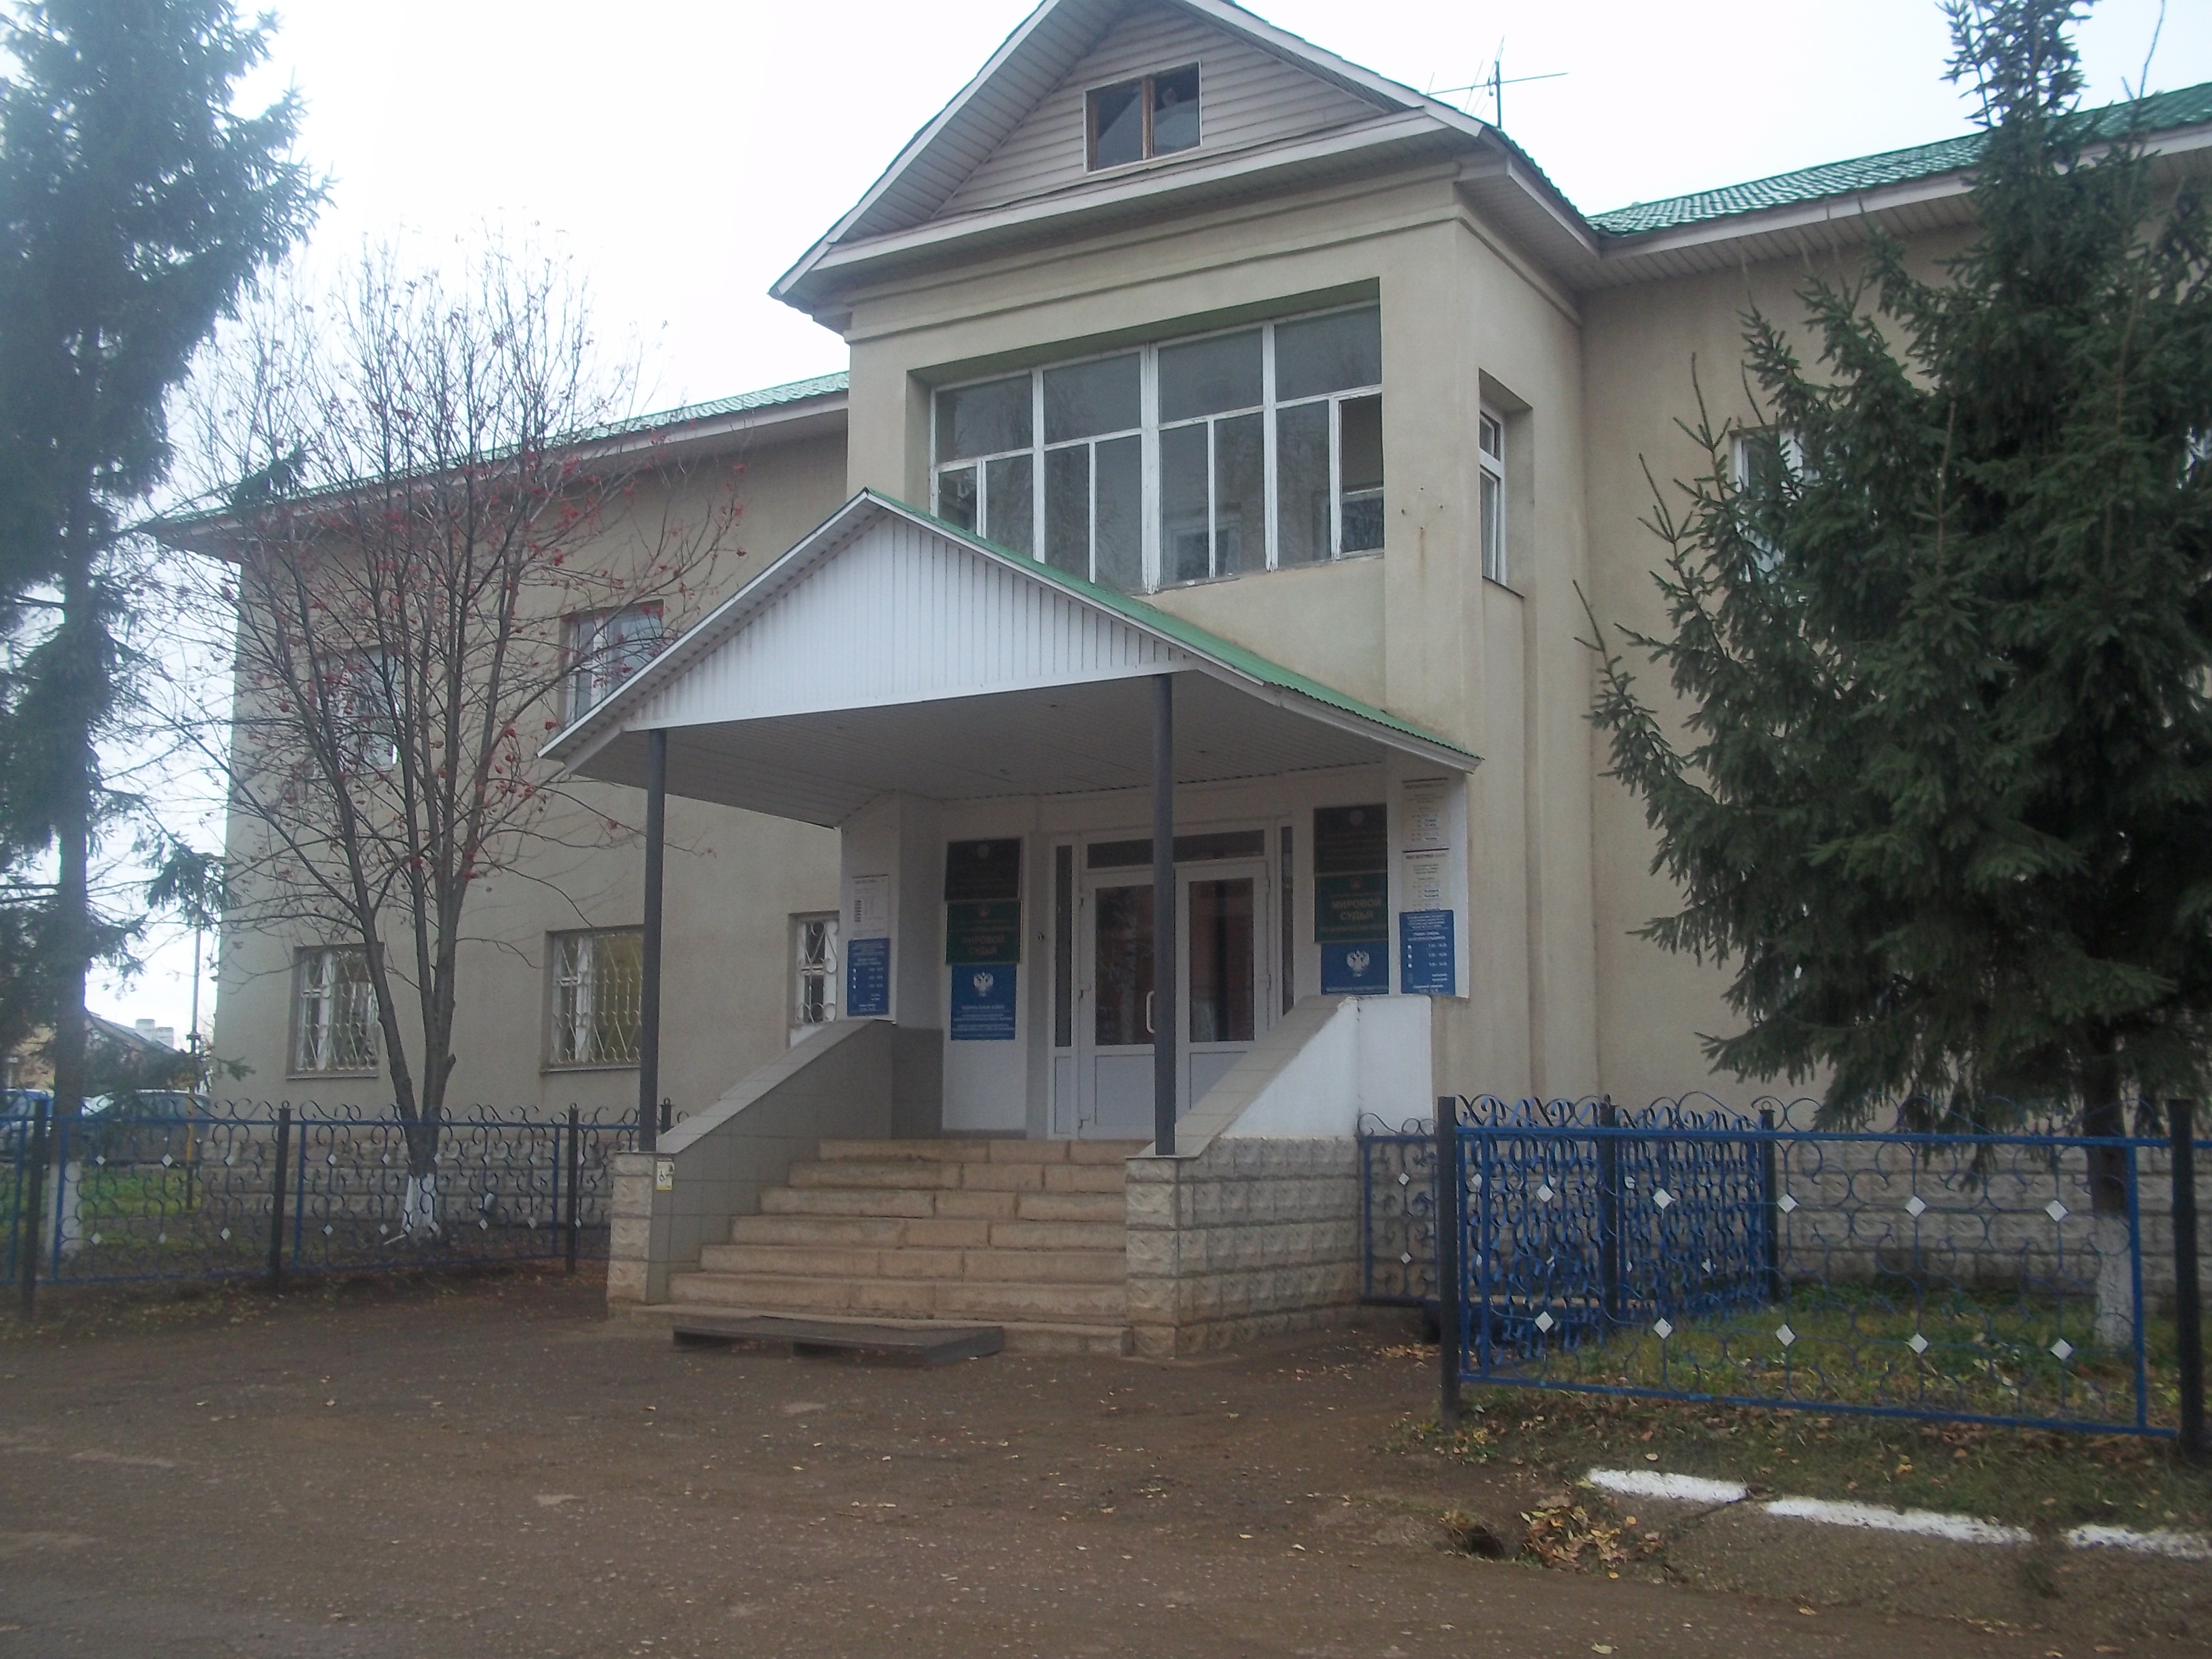  Вид здания ТОРМ по Шаранскому району, расположенное по адресу село Шаран, улица Свердлова, дом 1